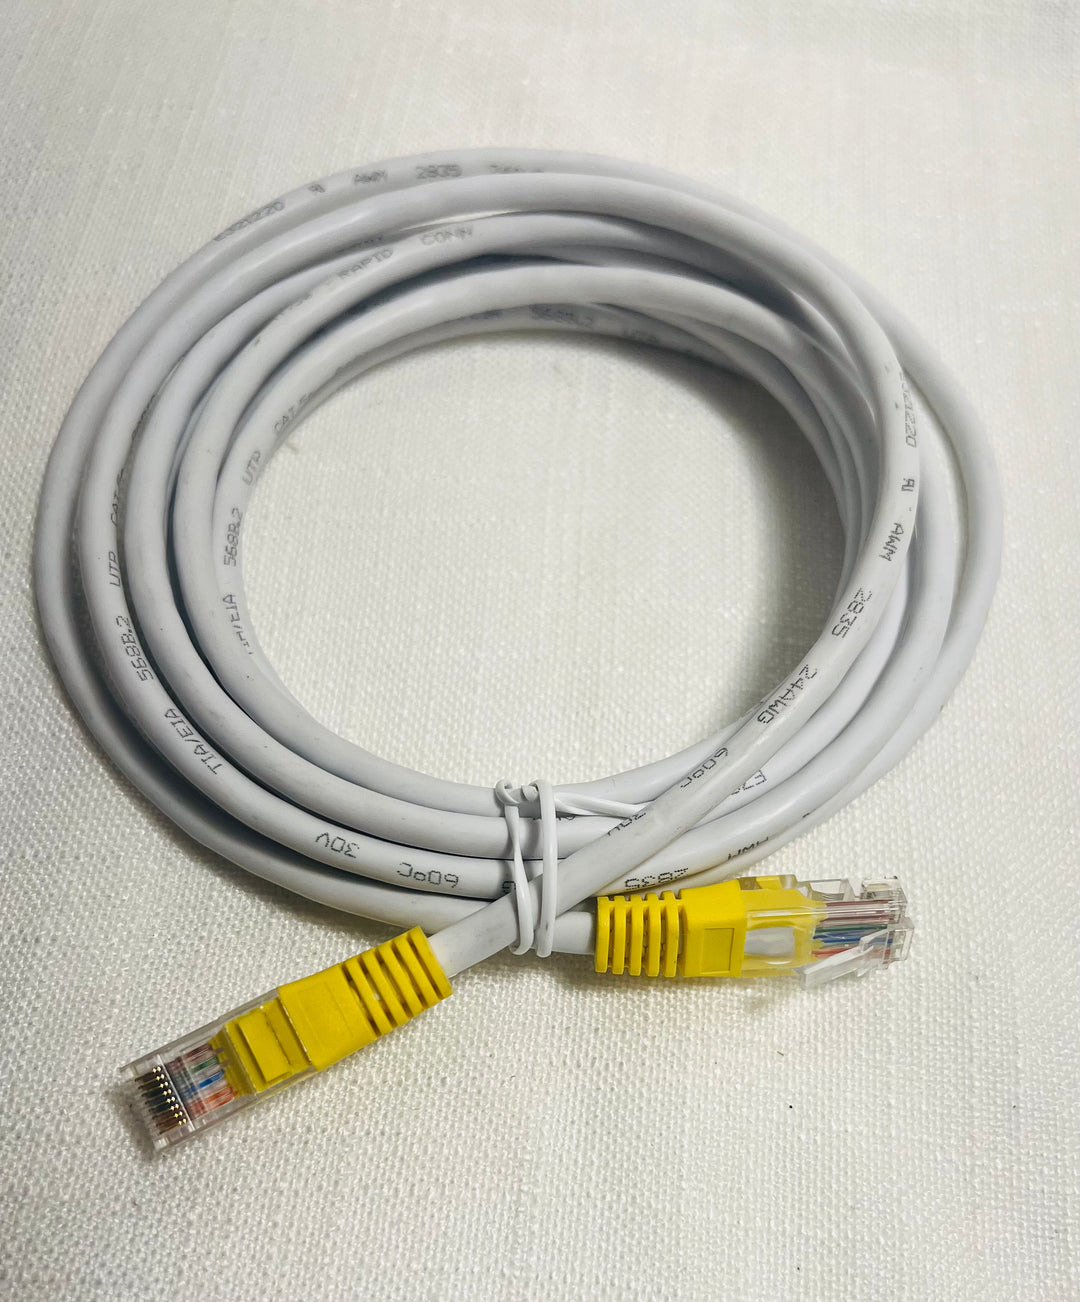 Internet kabel